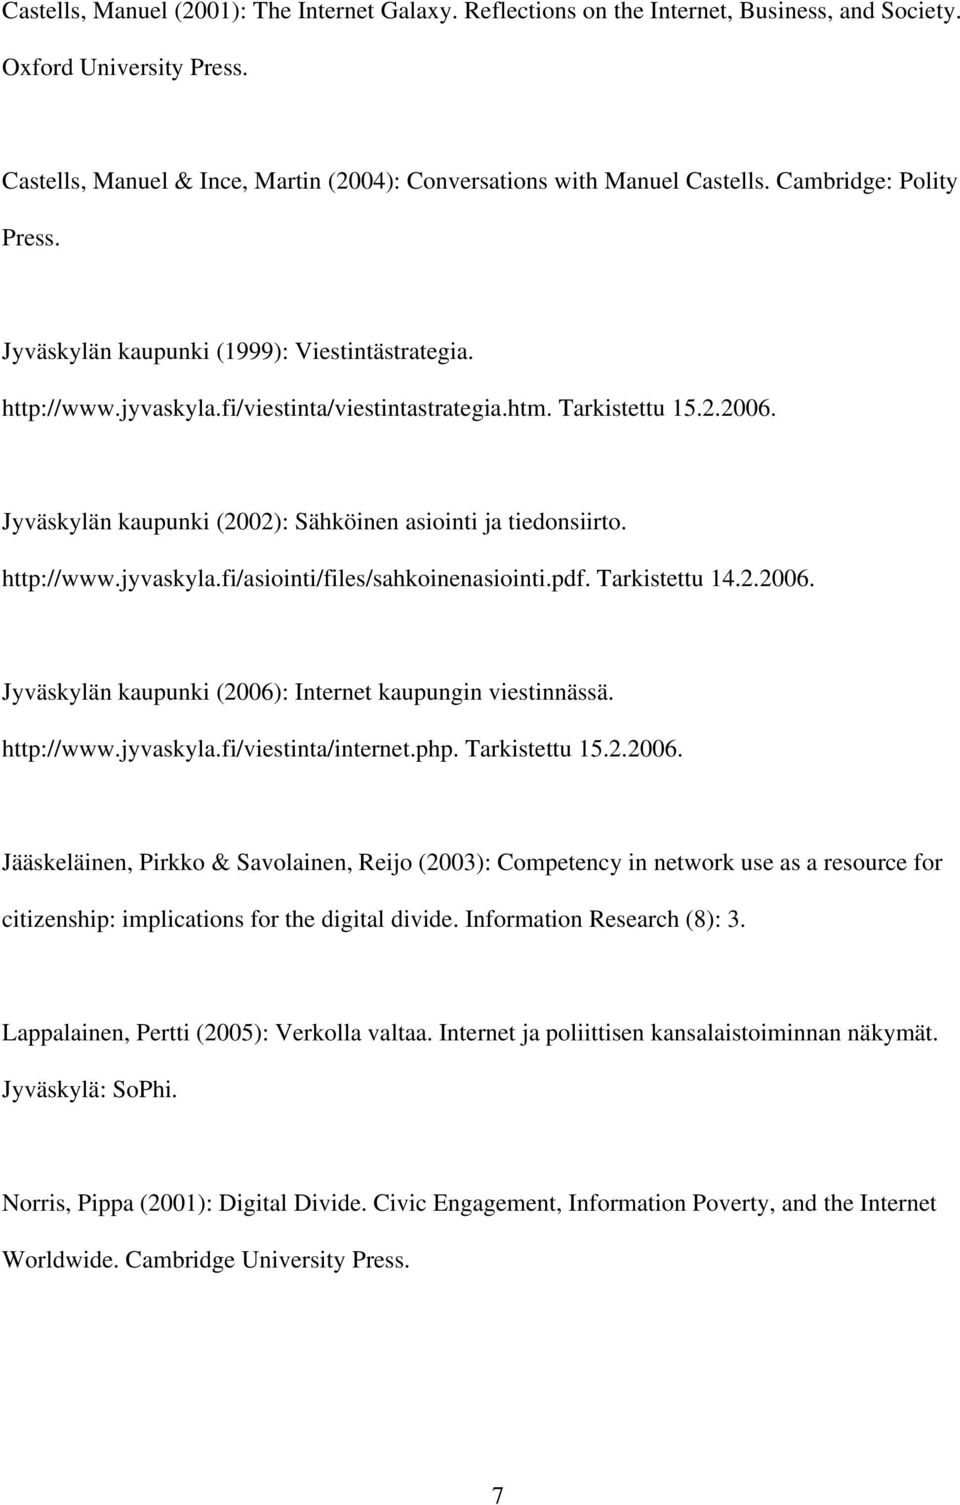 Jyväskylän kaupunki (2002): Sähköinen asiointi ja tiedonsiirto. http://www.jyvaskyla.fi/asiointi/files/sahkoinenasiointi.pdf. Tarkistettu 14.2.2006.